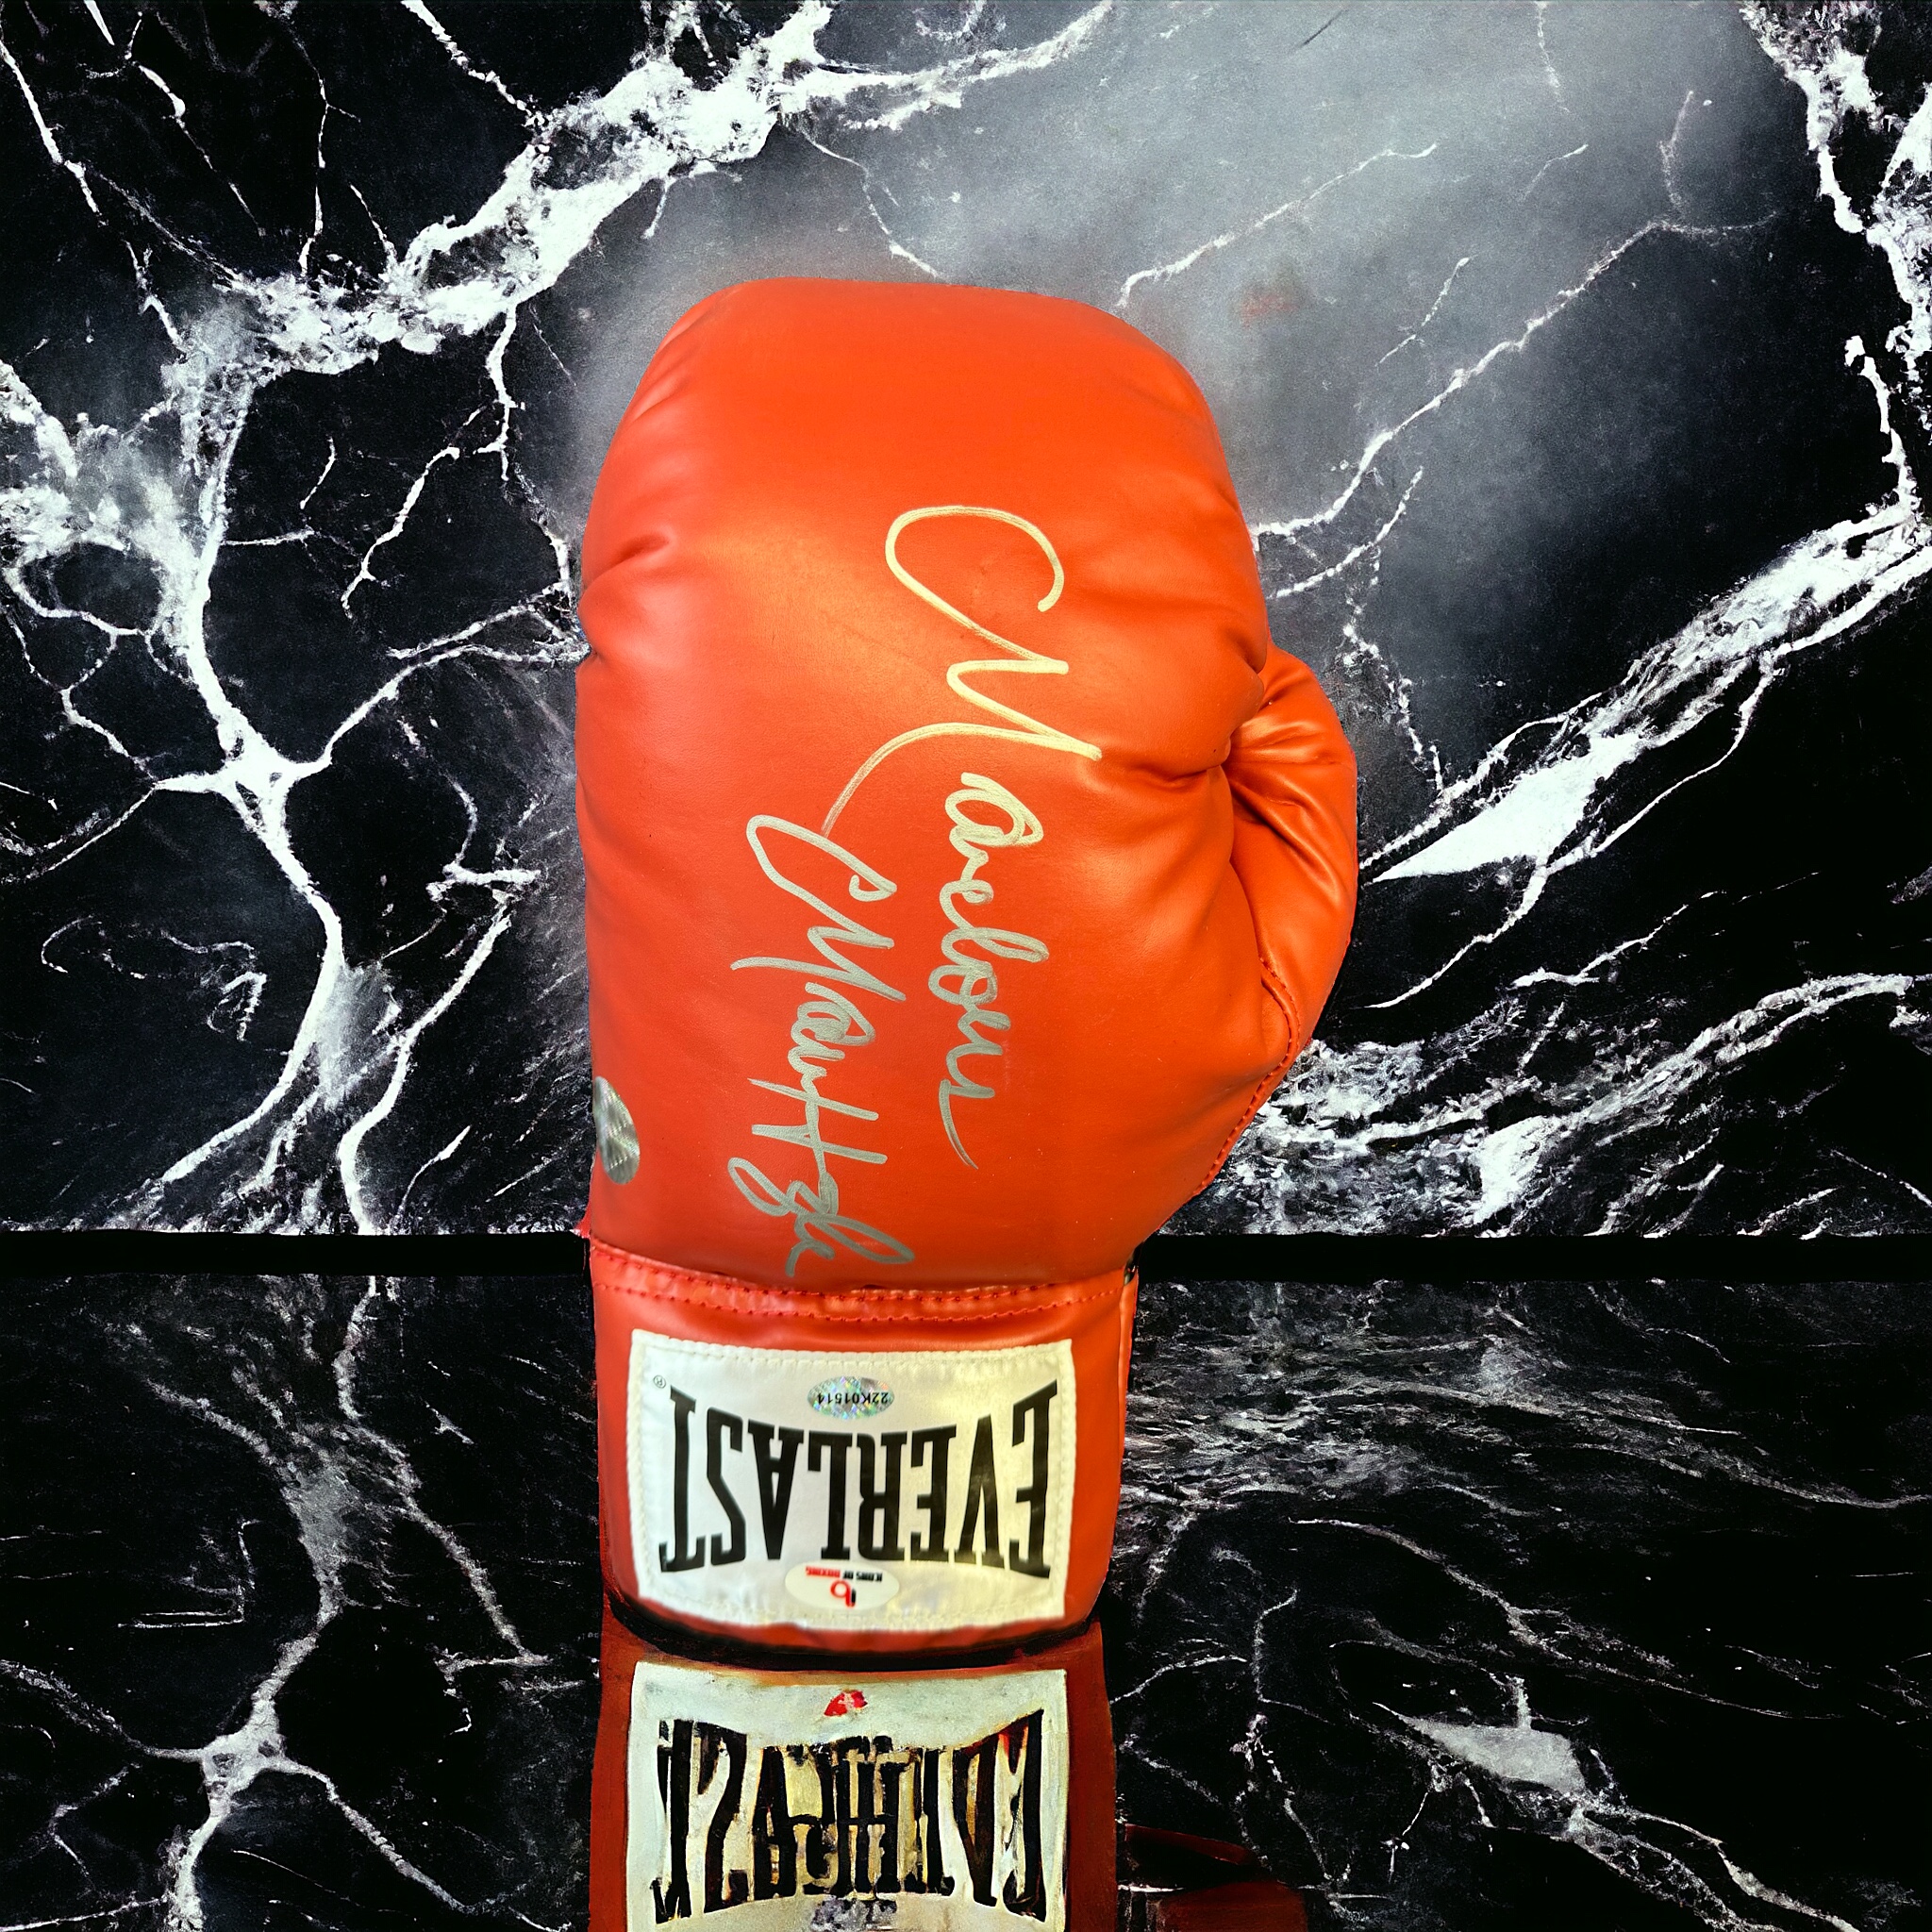 Marvelous Marvin Hagler signed red Everlast boxing glove. Marvelous Marvin Hagler (born Marvin